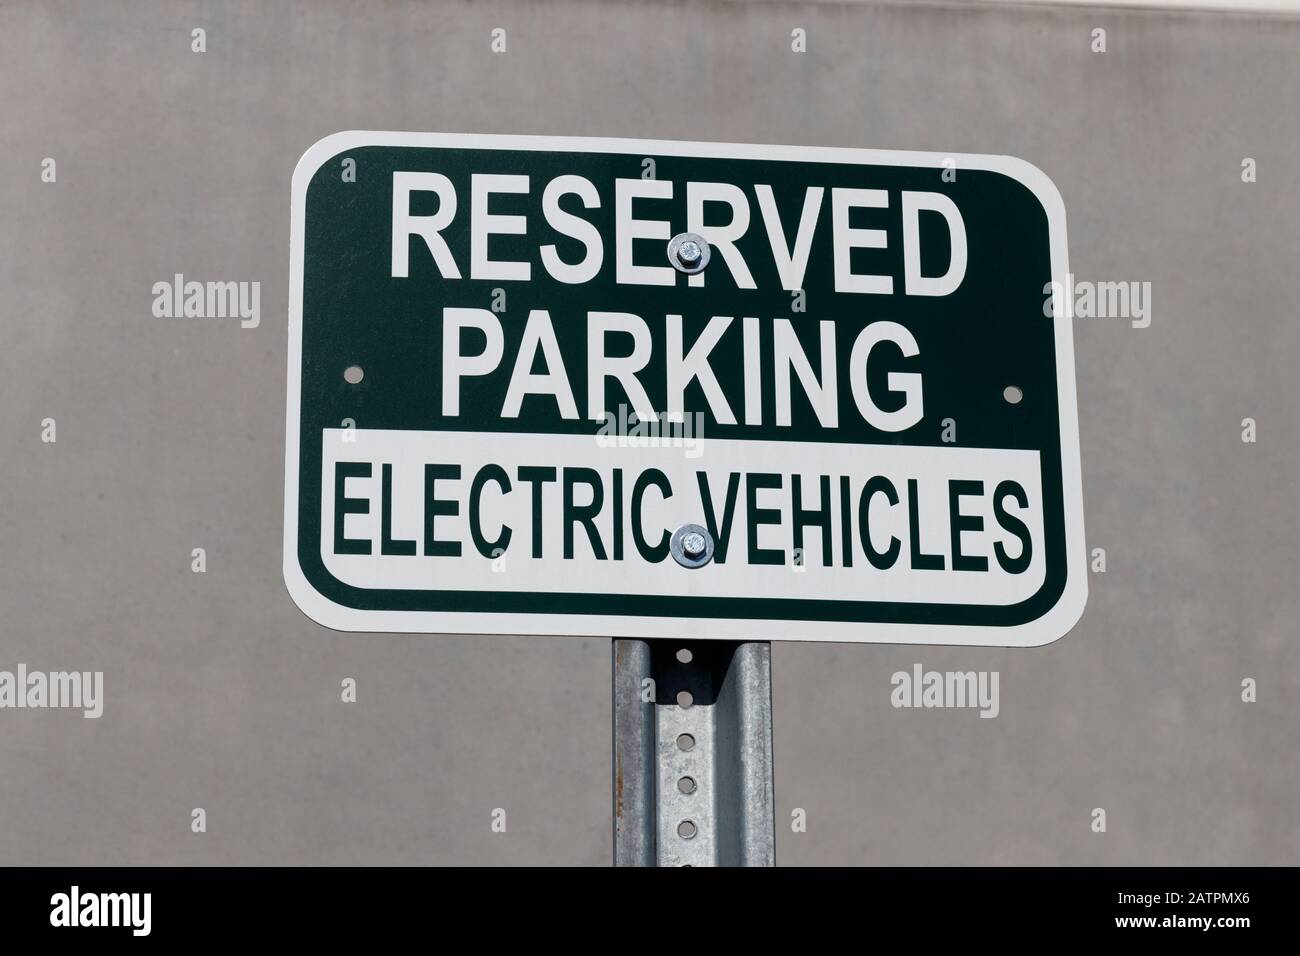 Estacionamiento reservado para la señal de vehículos eléctricos. Muchas empresas están reservando plazas de aparcamiento cerca de las entradas para vehículos eléctricos. Foto de stock